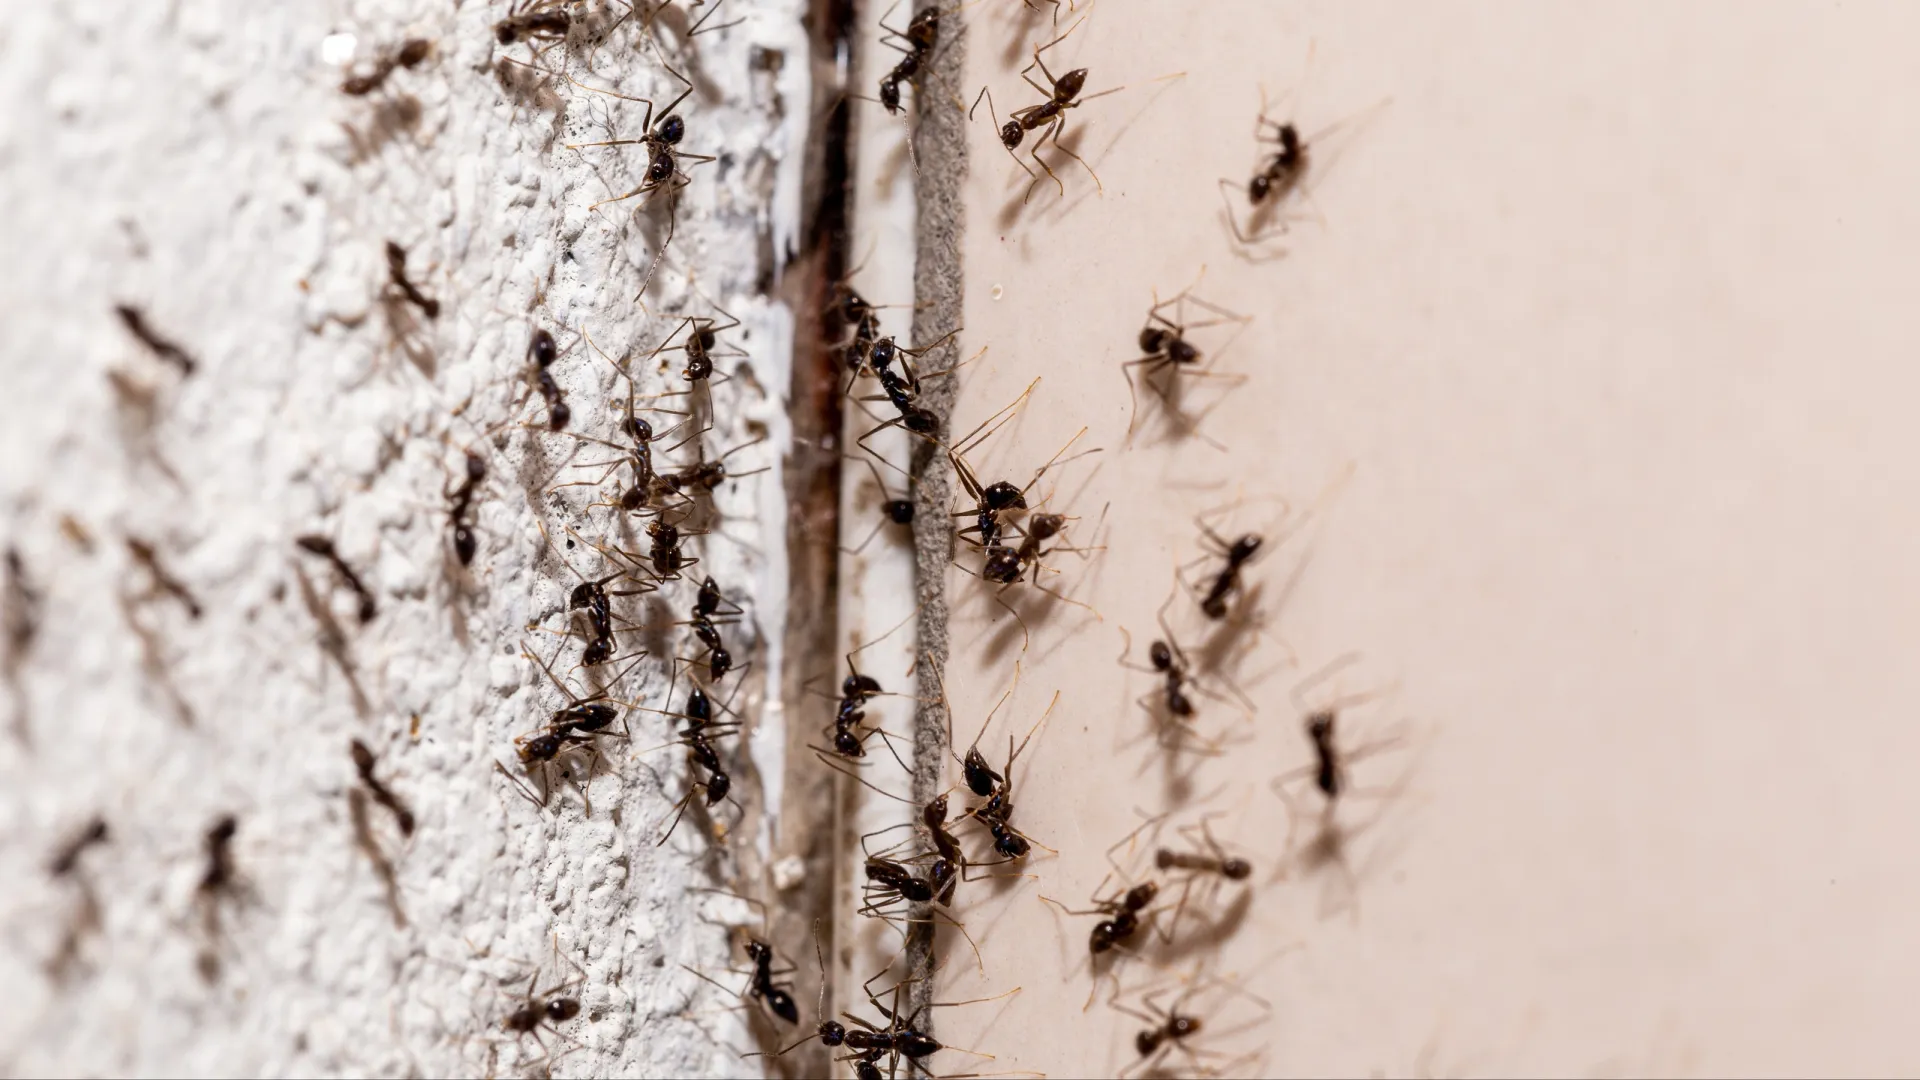 В Муравленко появилось большое количество мелких рыжих муравьев. Фото: RHJPhtotos/Shutterstock/Fotodom